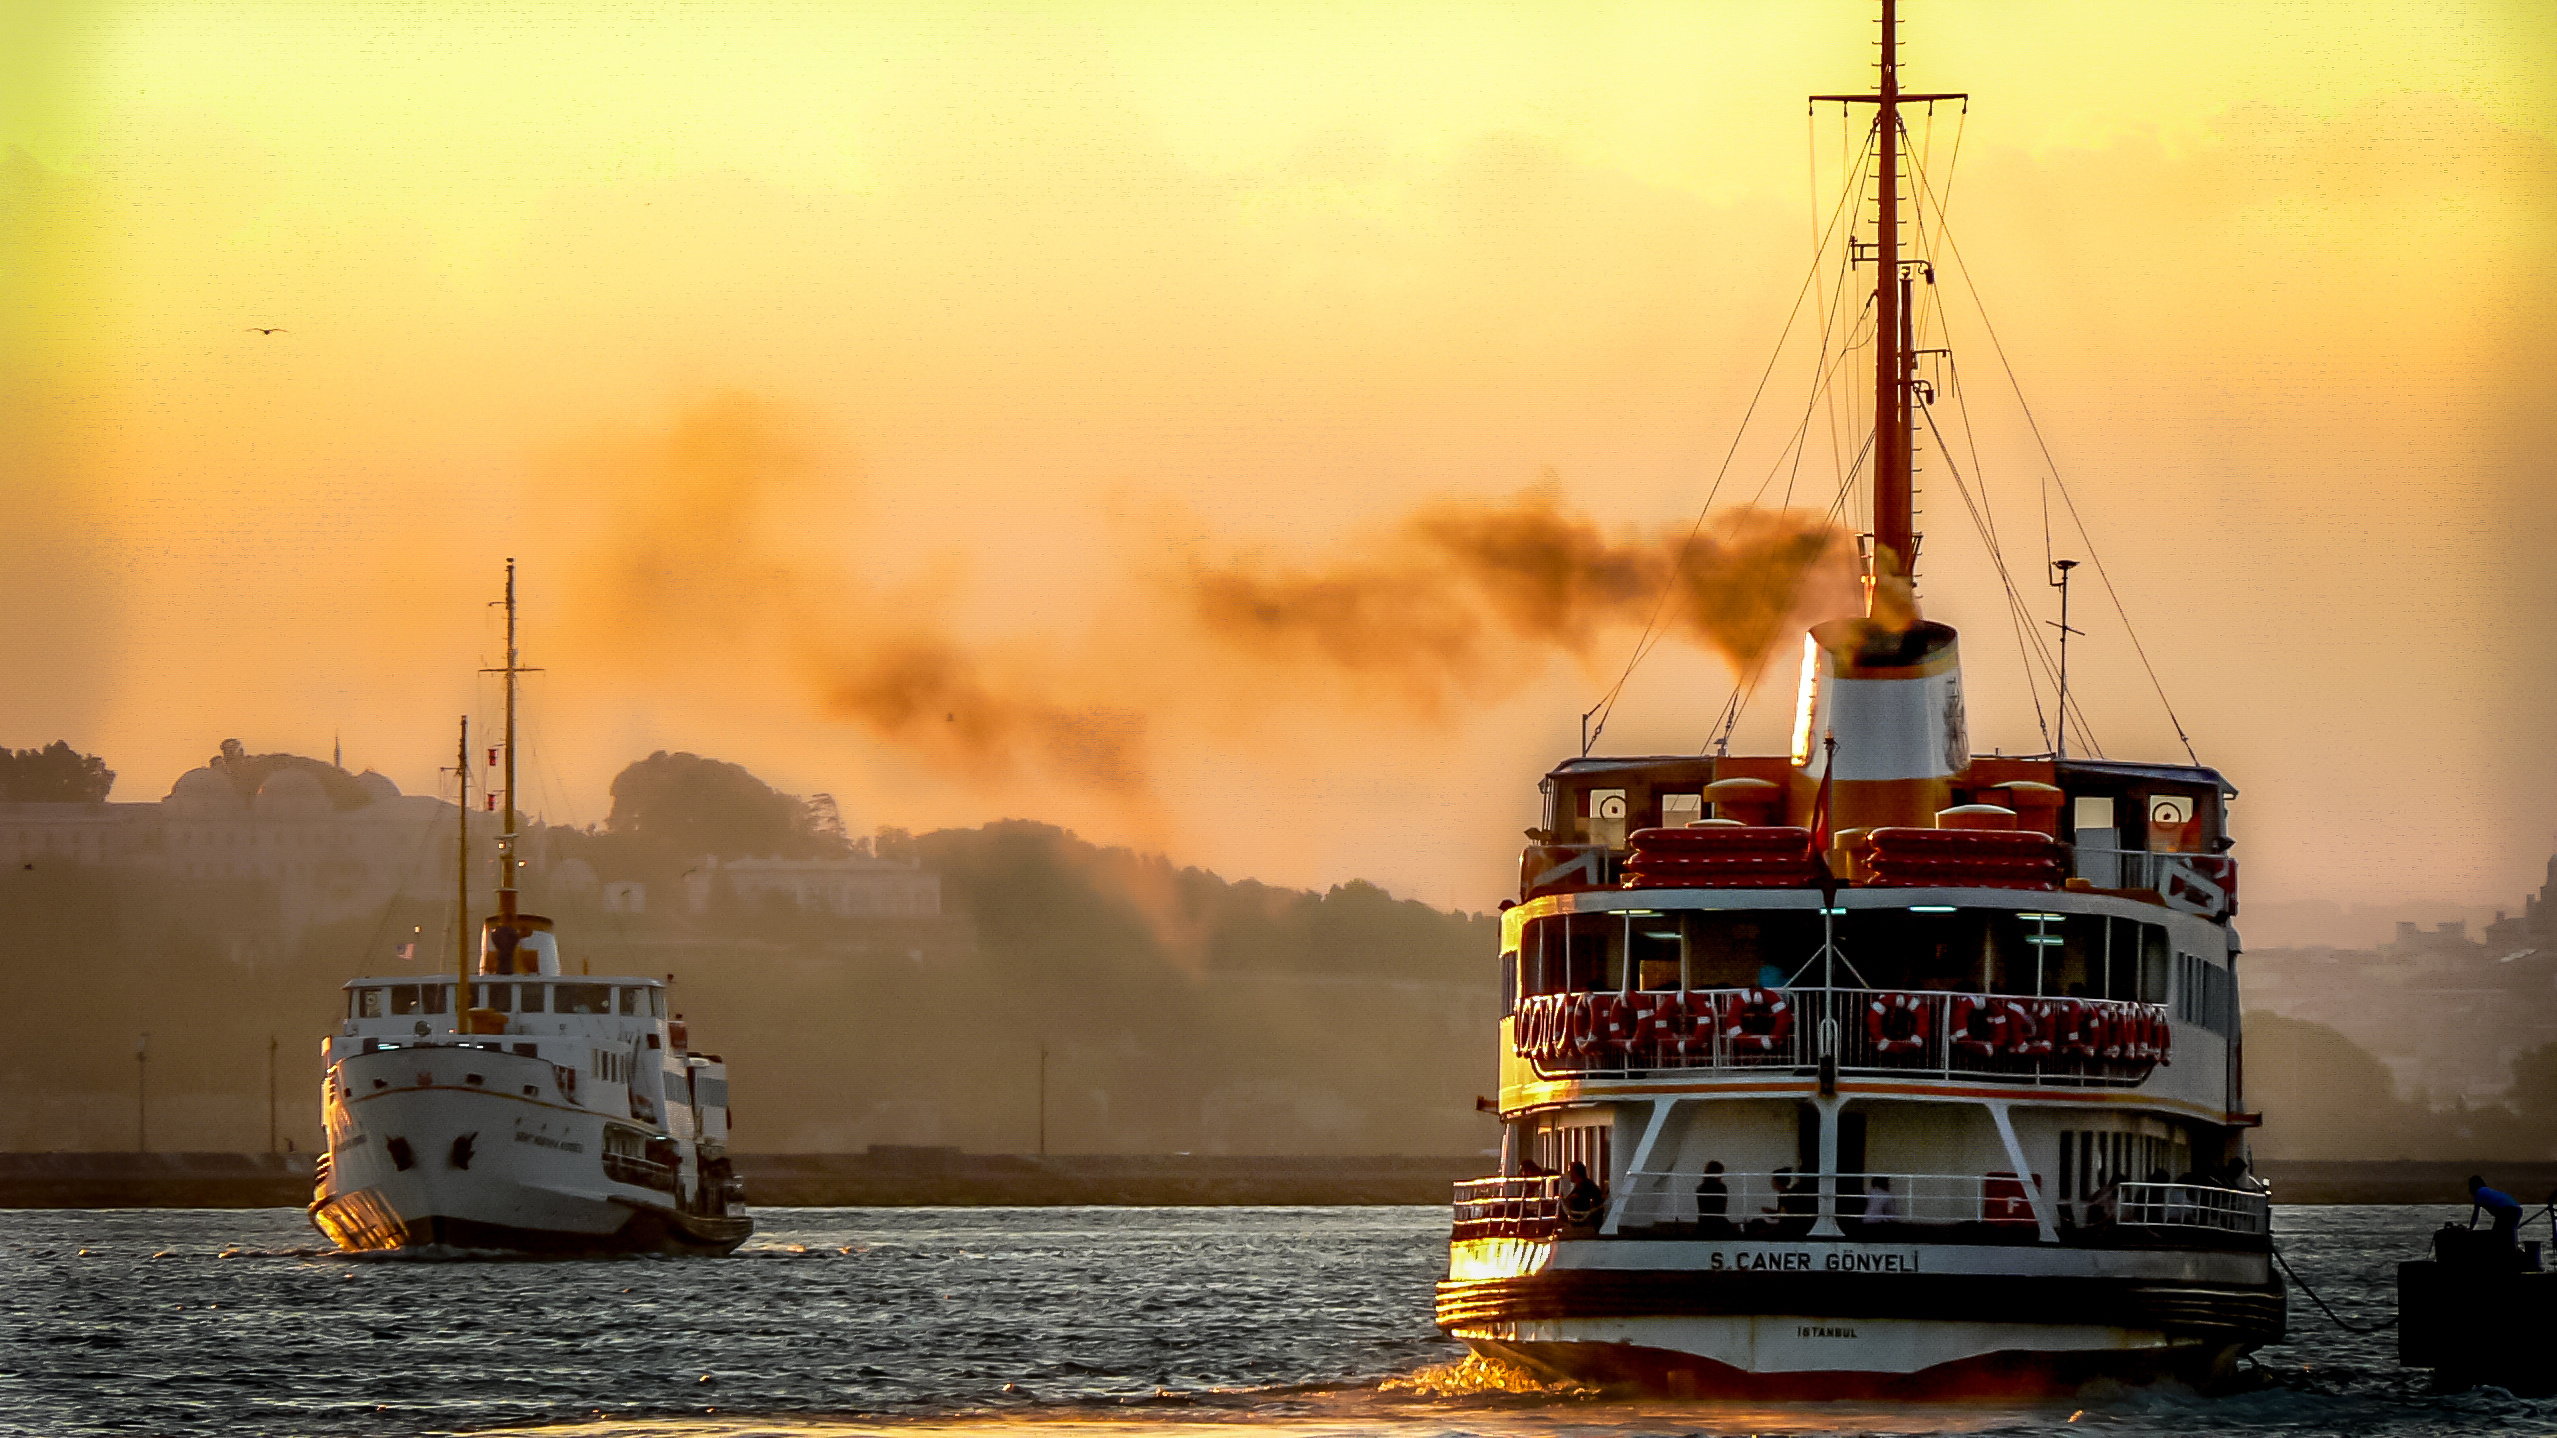 Ferry: Turkey, Istanbul, Boat across Bosphorus. 2560x1440 HD Wallpaper.